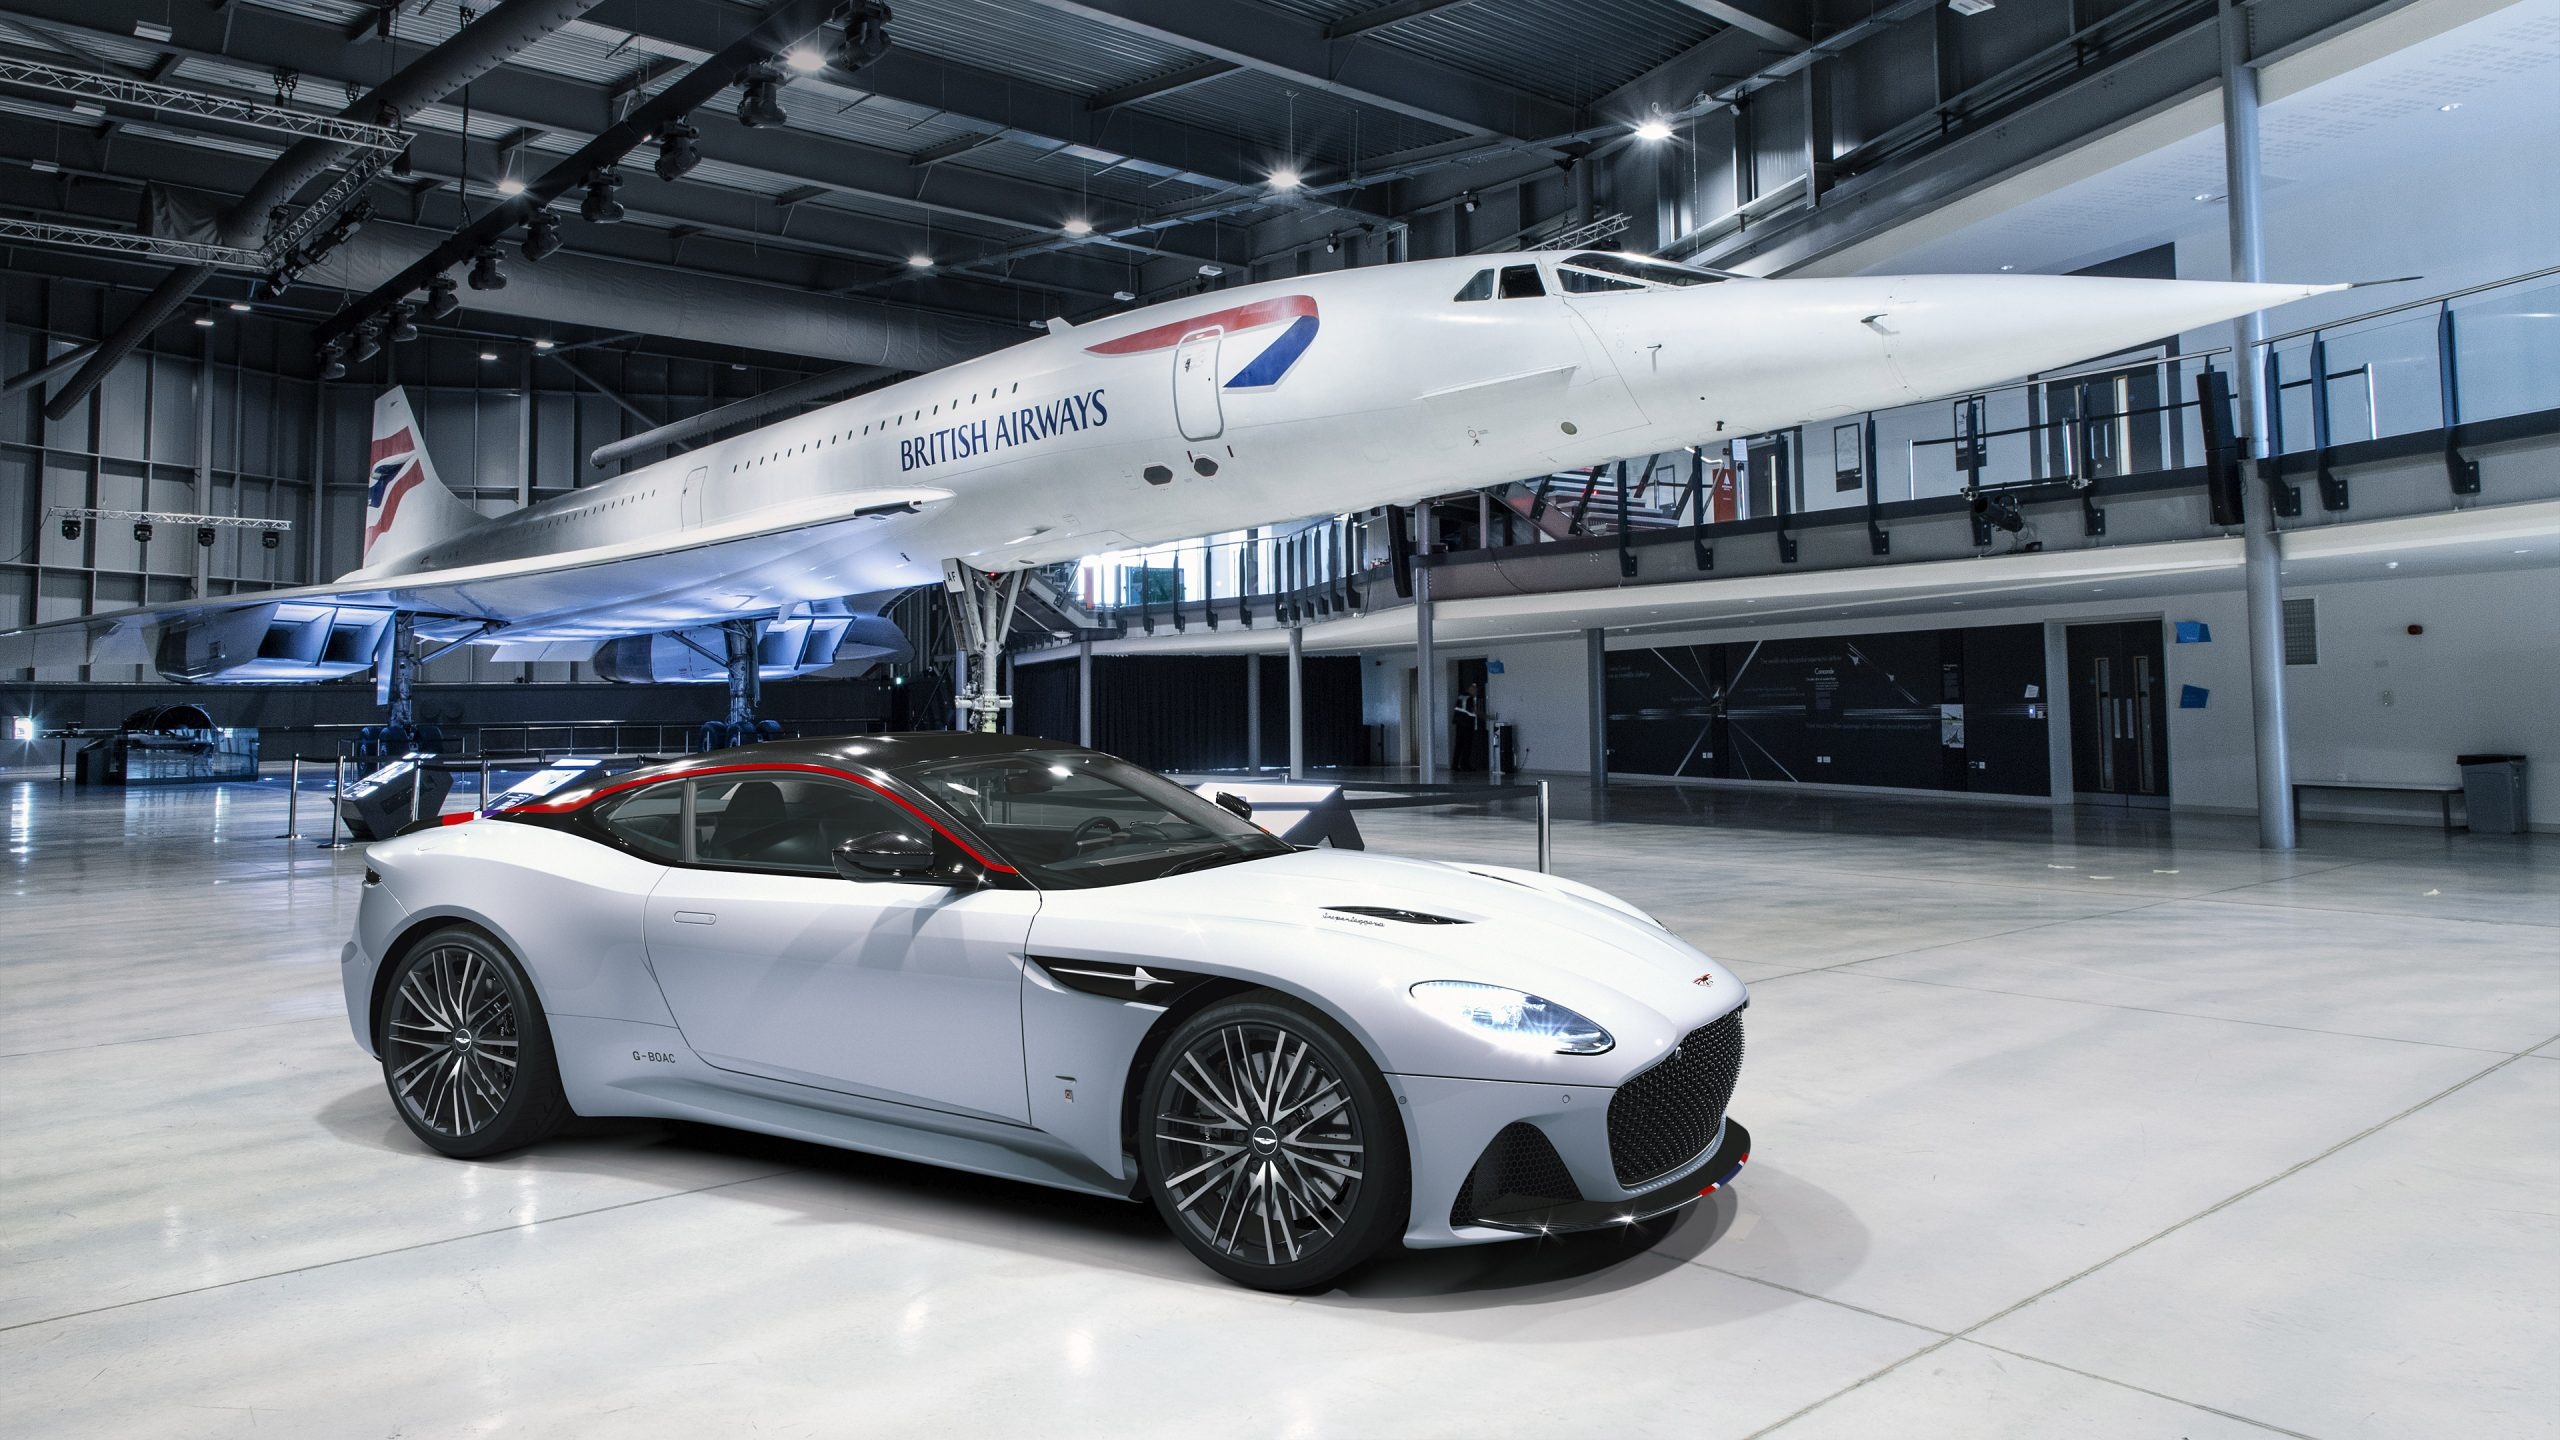 Concorde Aston Martin, Supercar wallpaper, Supercarsnet, 2560x1440 HD Desktop